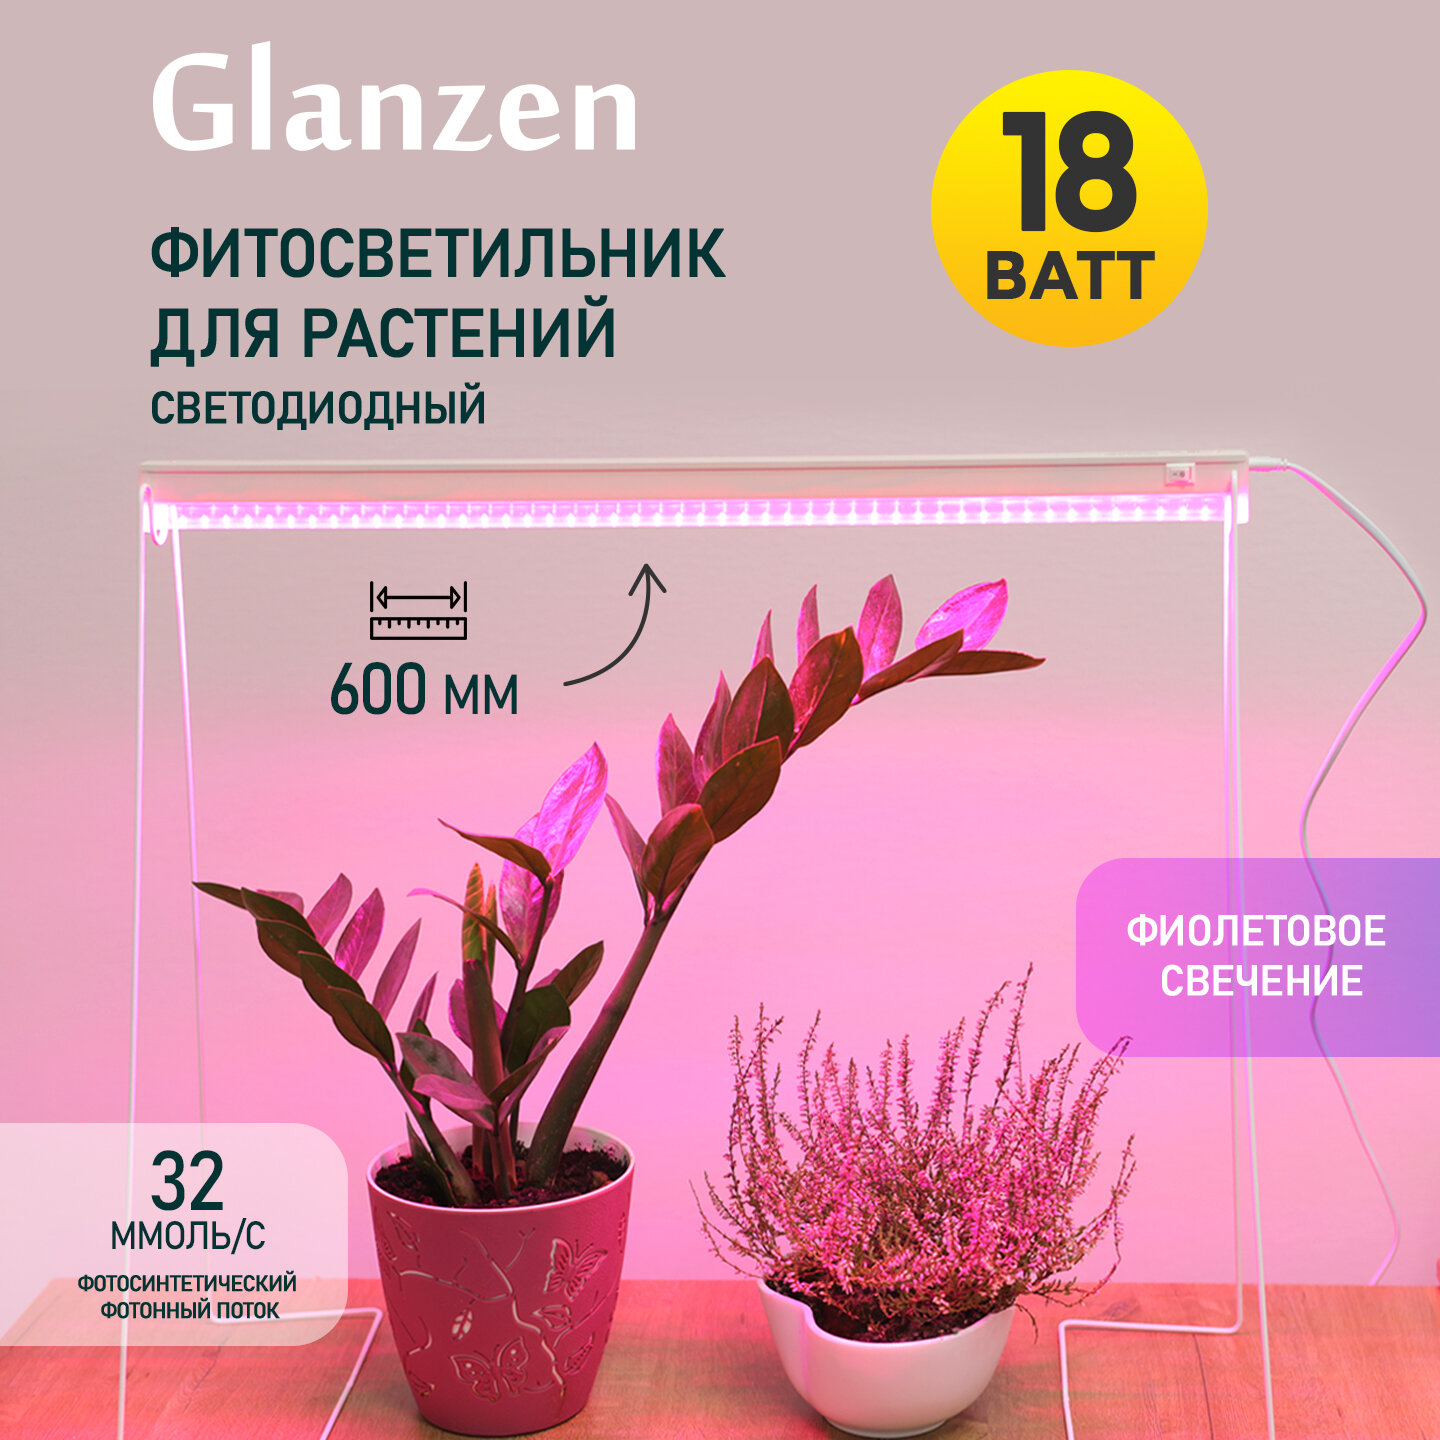 Светодиодный линейный фитосветильник для растений 18 Вт GLANZEN RPD-0600-18-fito